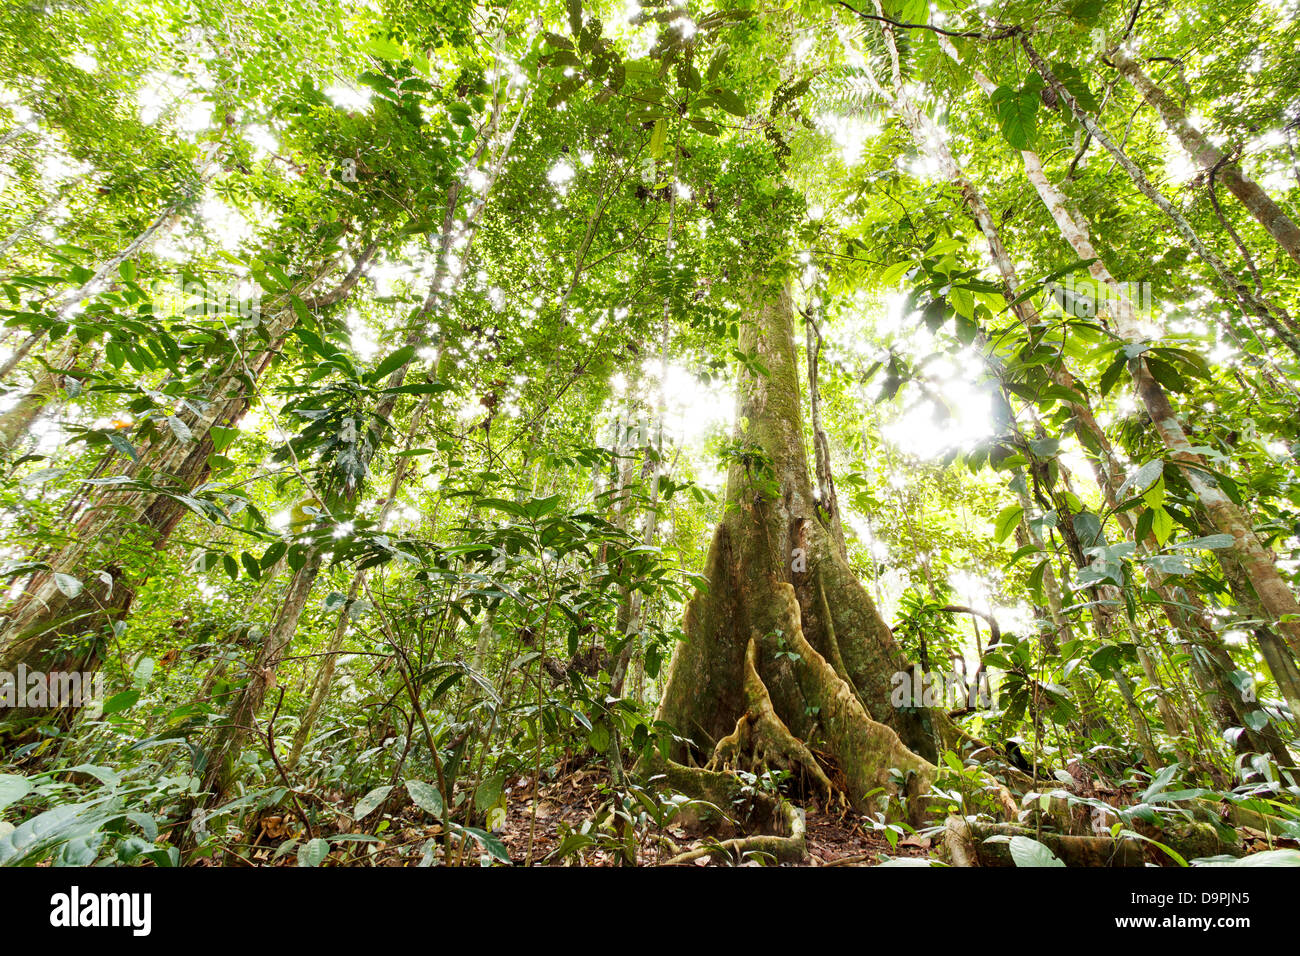 Basso angolo vista della foresta pluviale tropicale con una grande arginato tree root, Ecuador Foto Stock